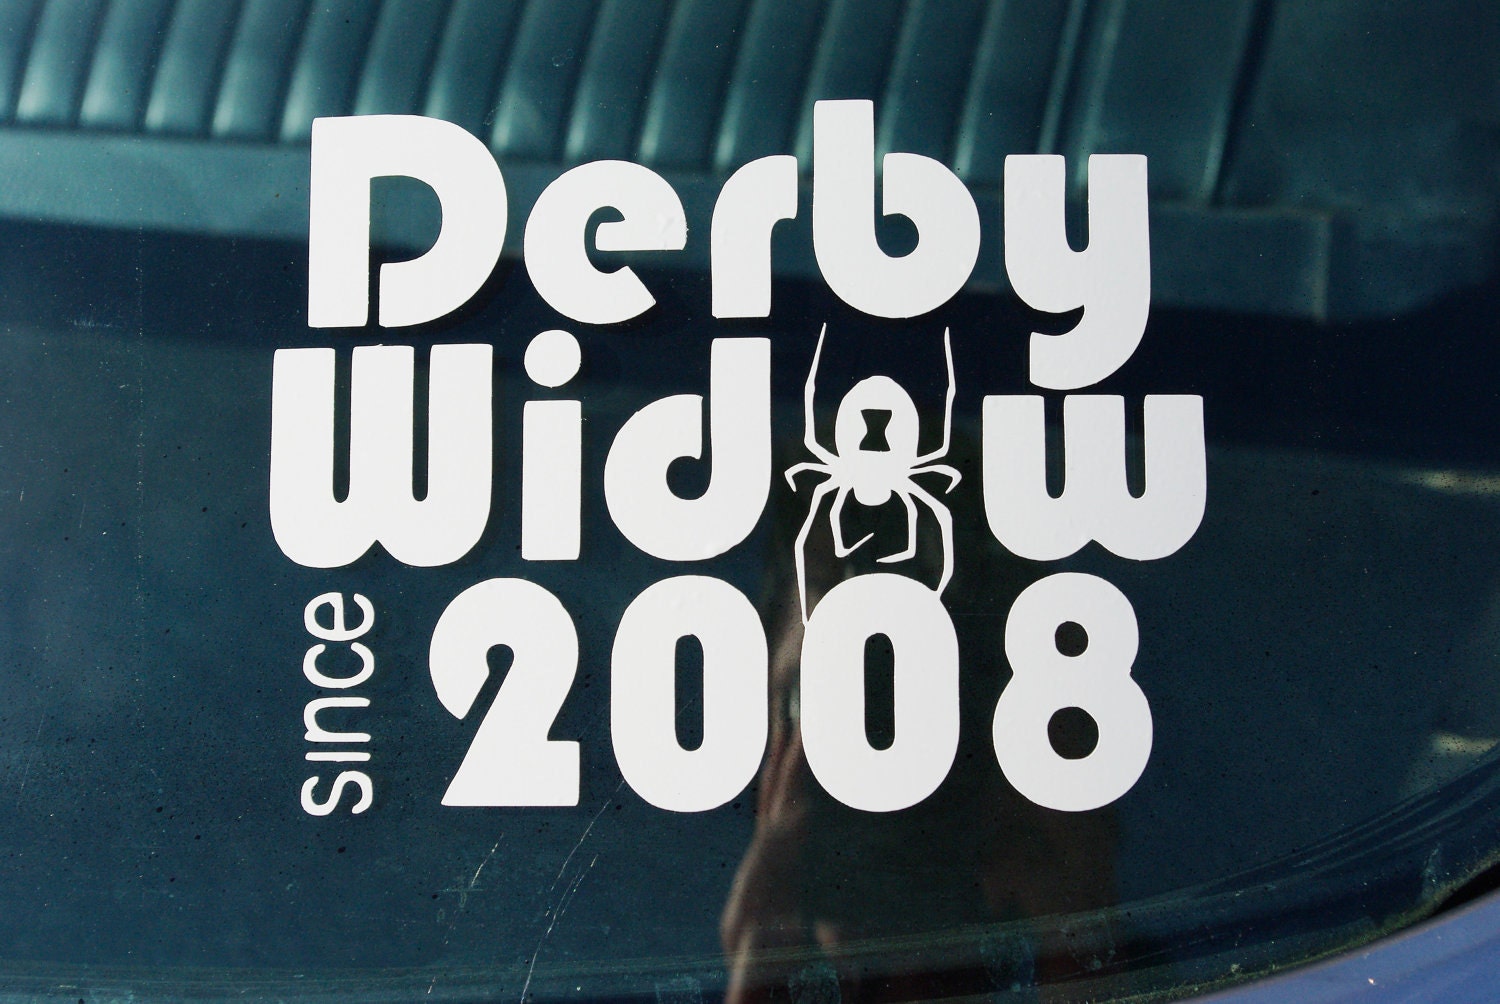 Derby Widow